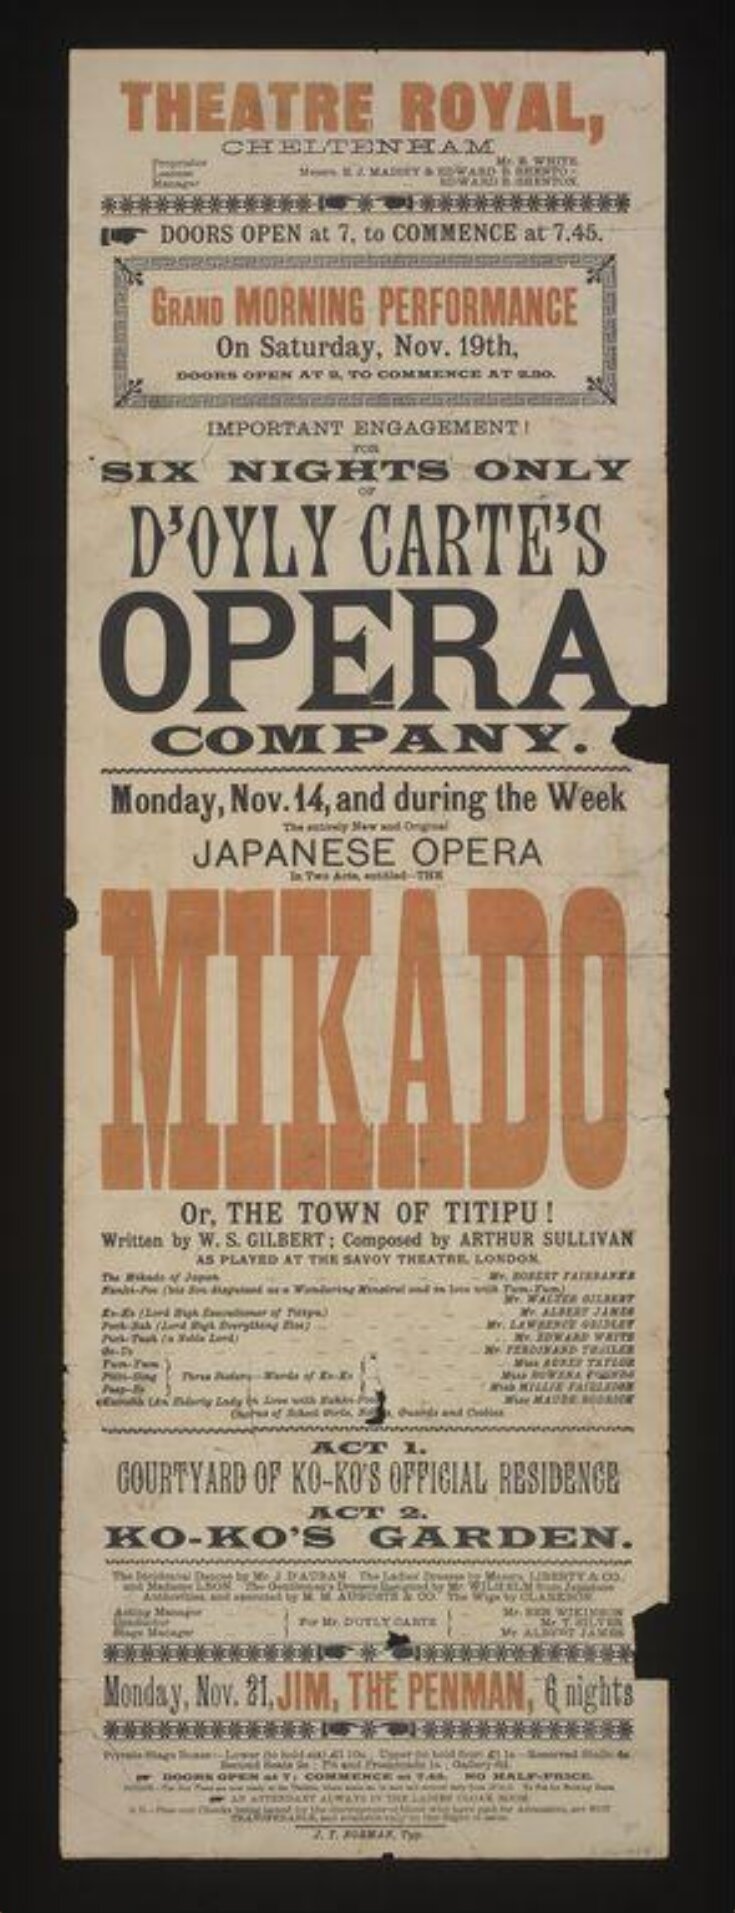 The Mikado image